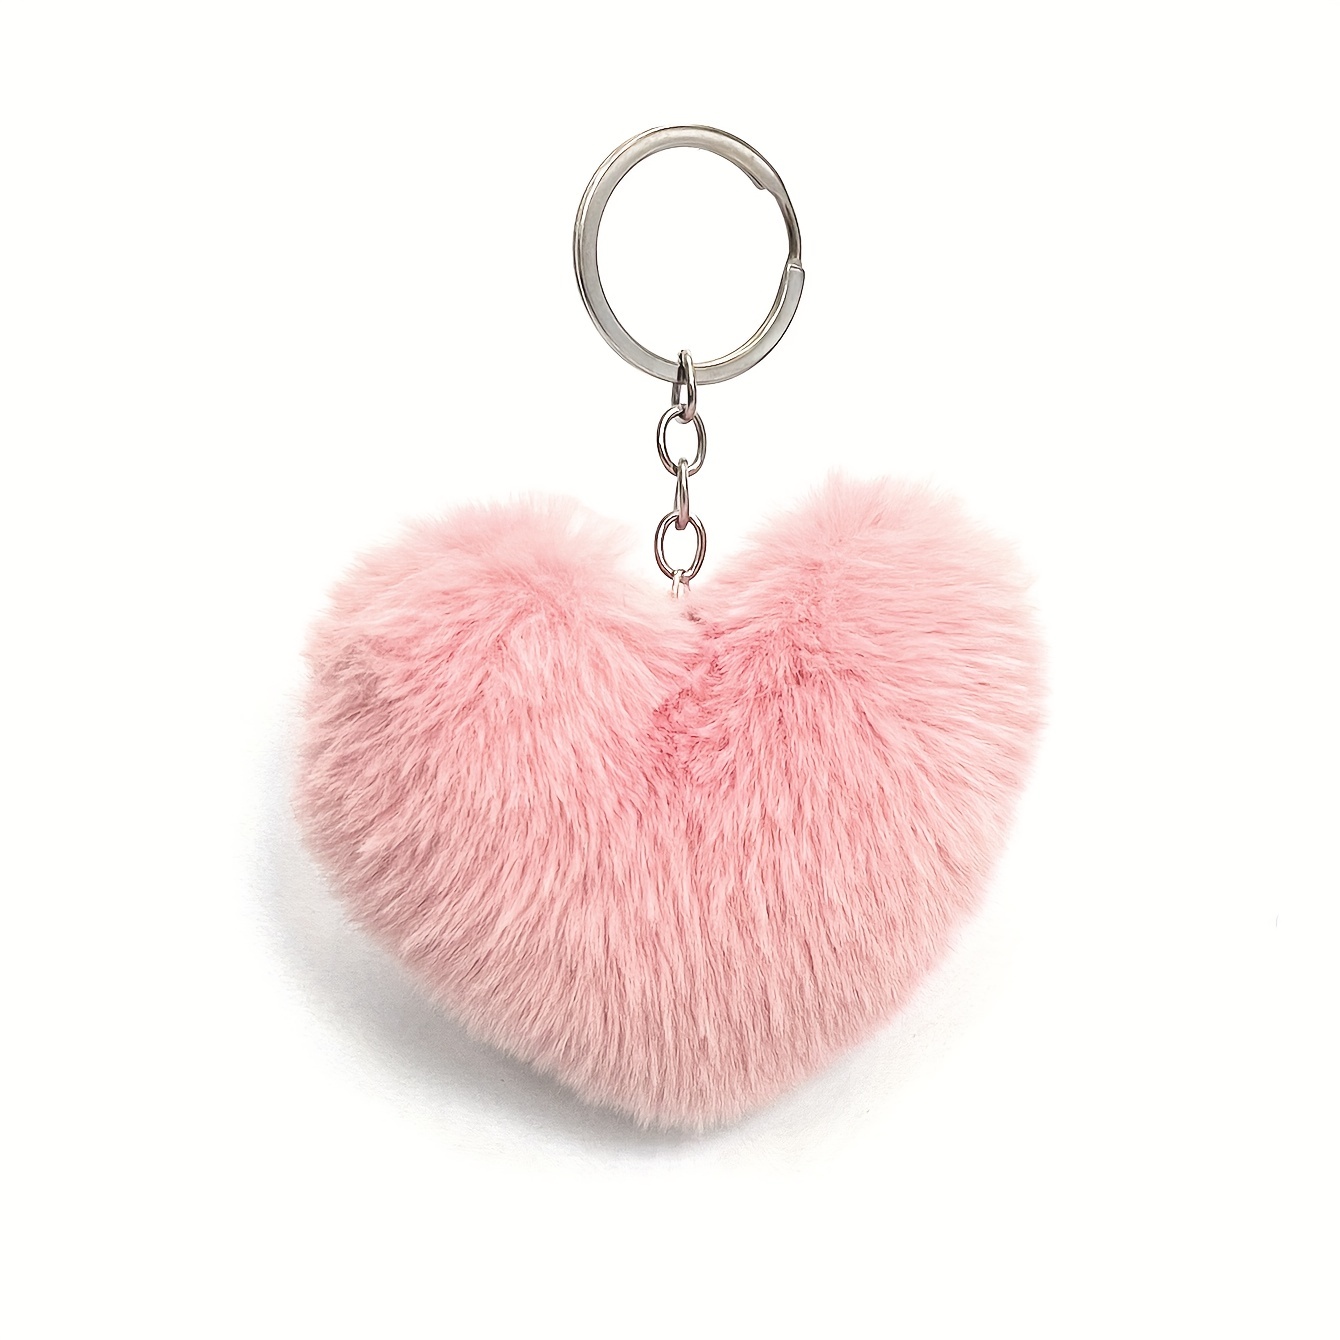 Colored Pom Pom Keychain Bulk Heart Fluffy Fur Puff Ball Key for Women